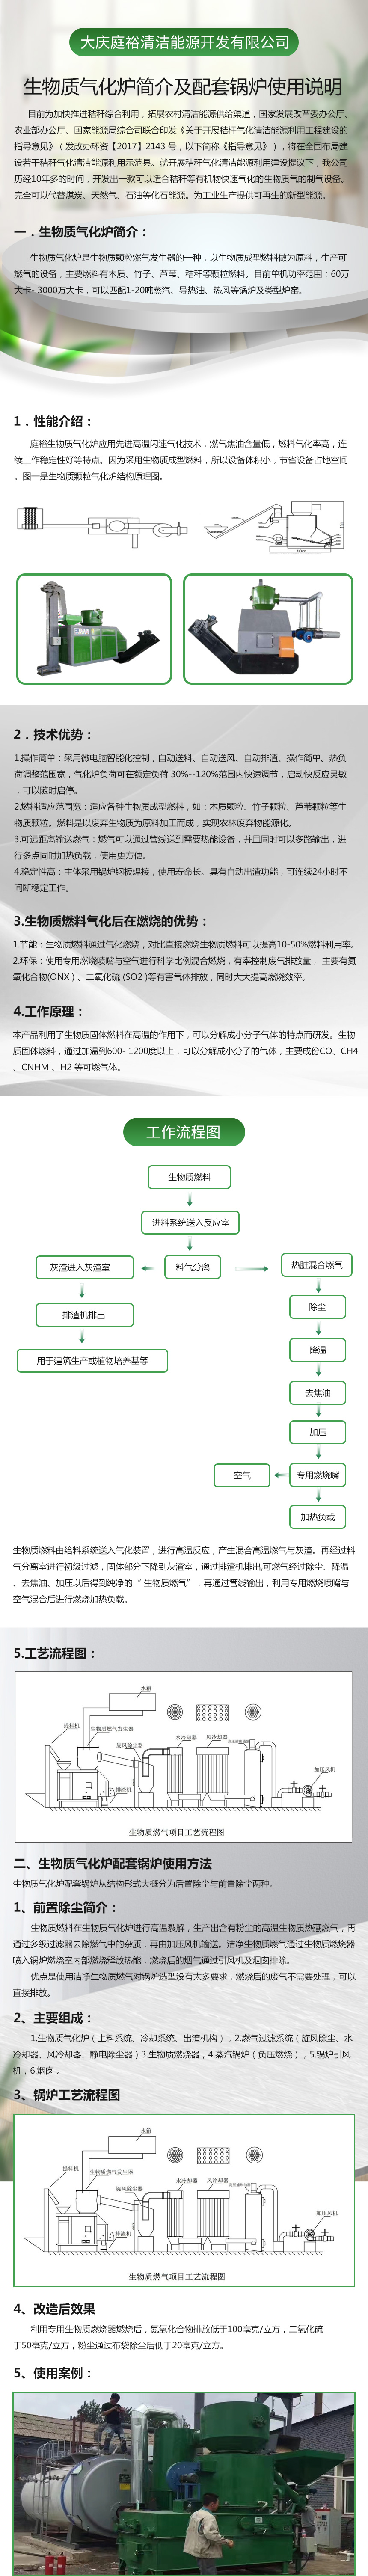 大庆庭裕生物质气化炉配套锅炉使用说明.jpg